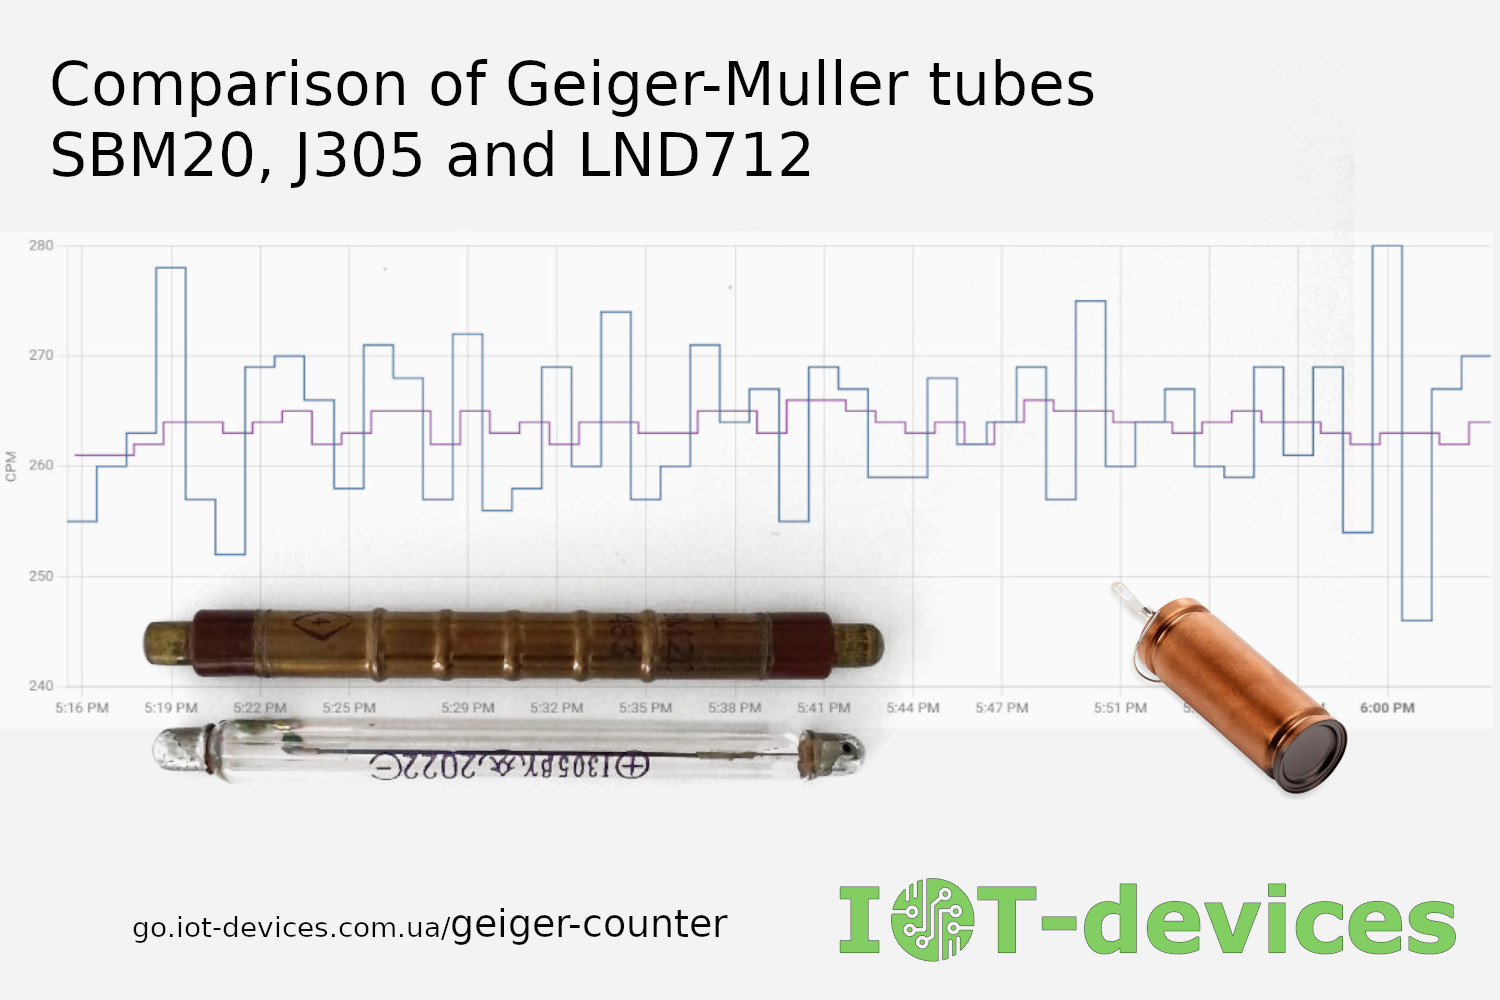 Comparison of Geiger-Muller tubes SBM20, J305 and LND712